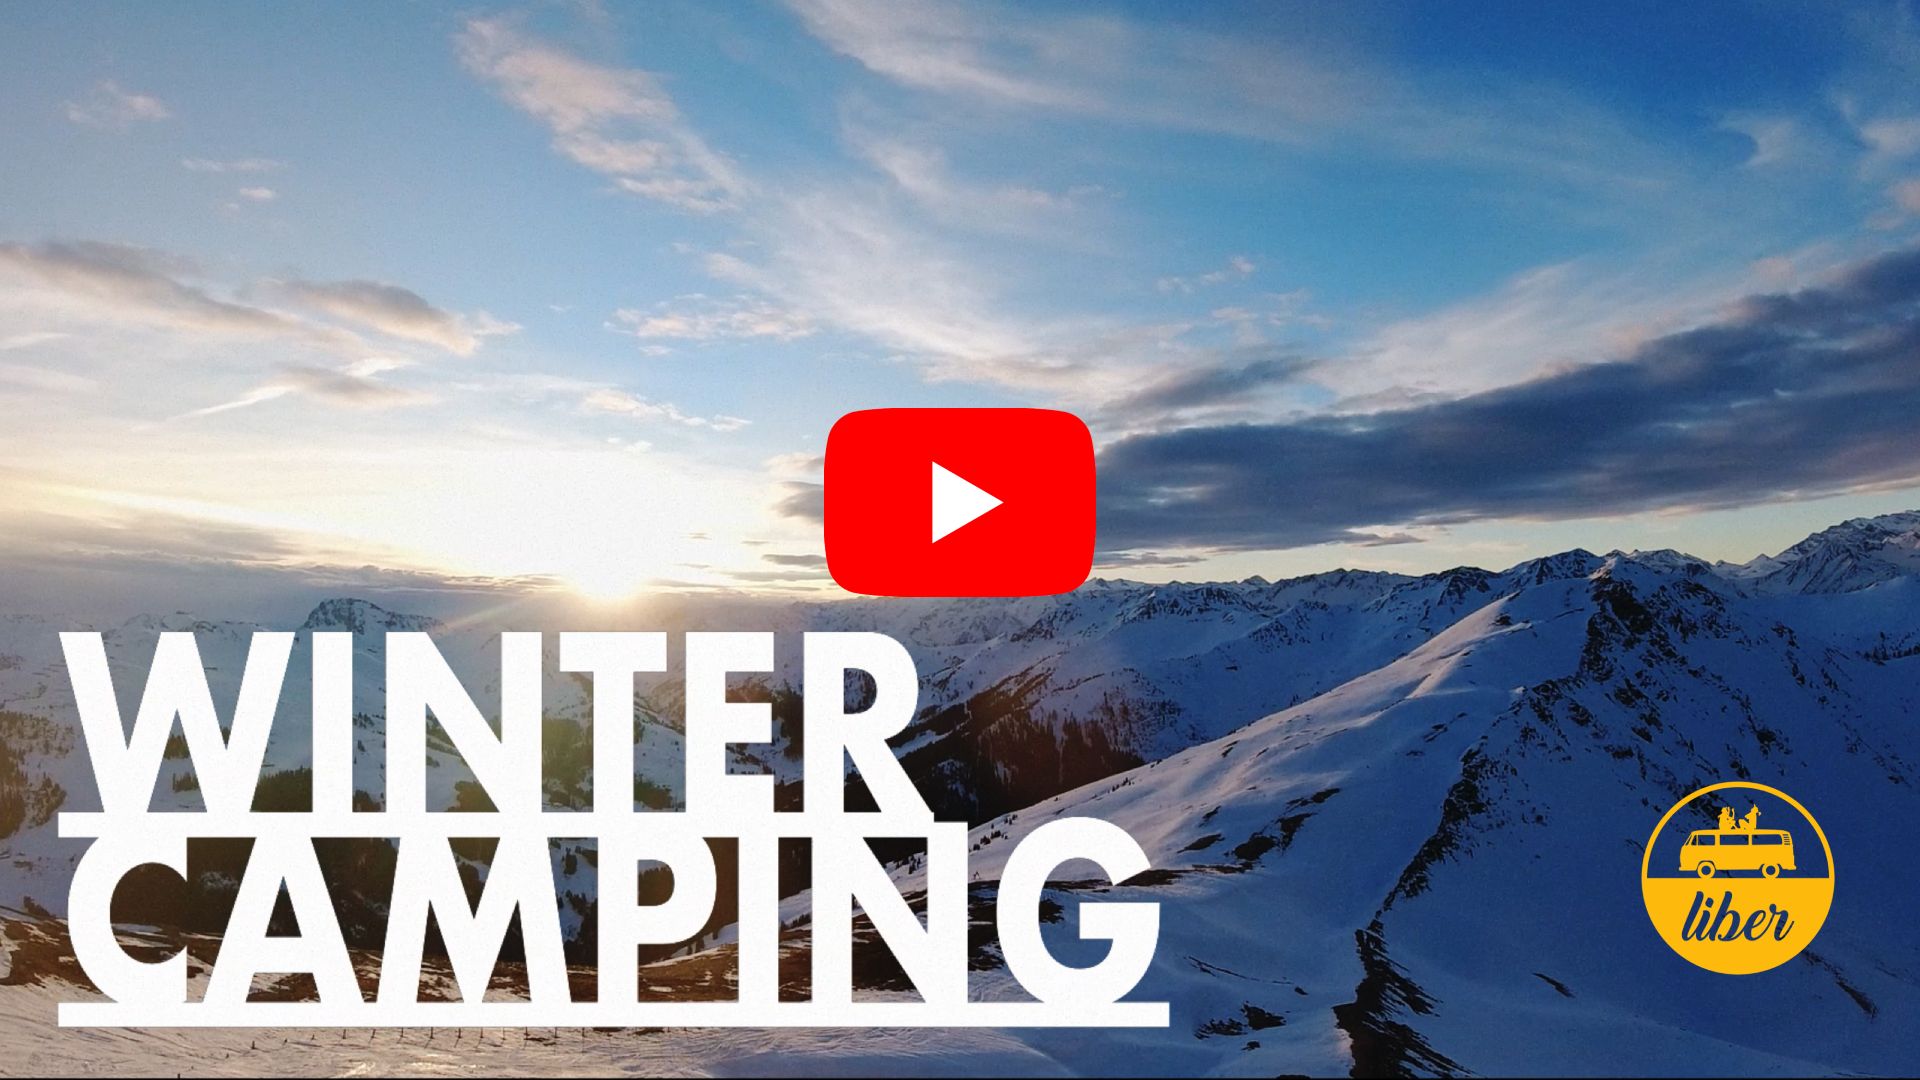 wintercamping mit dem camper durch die alpen